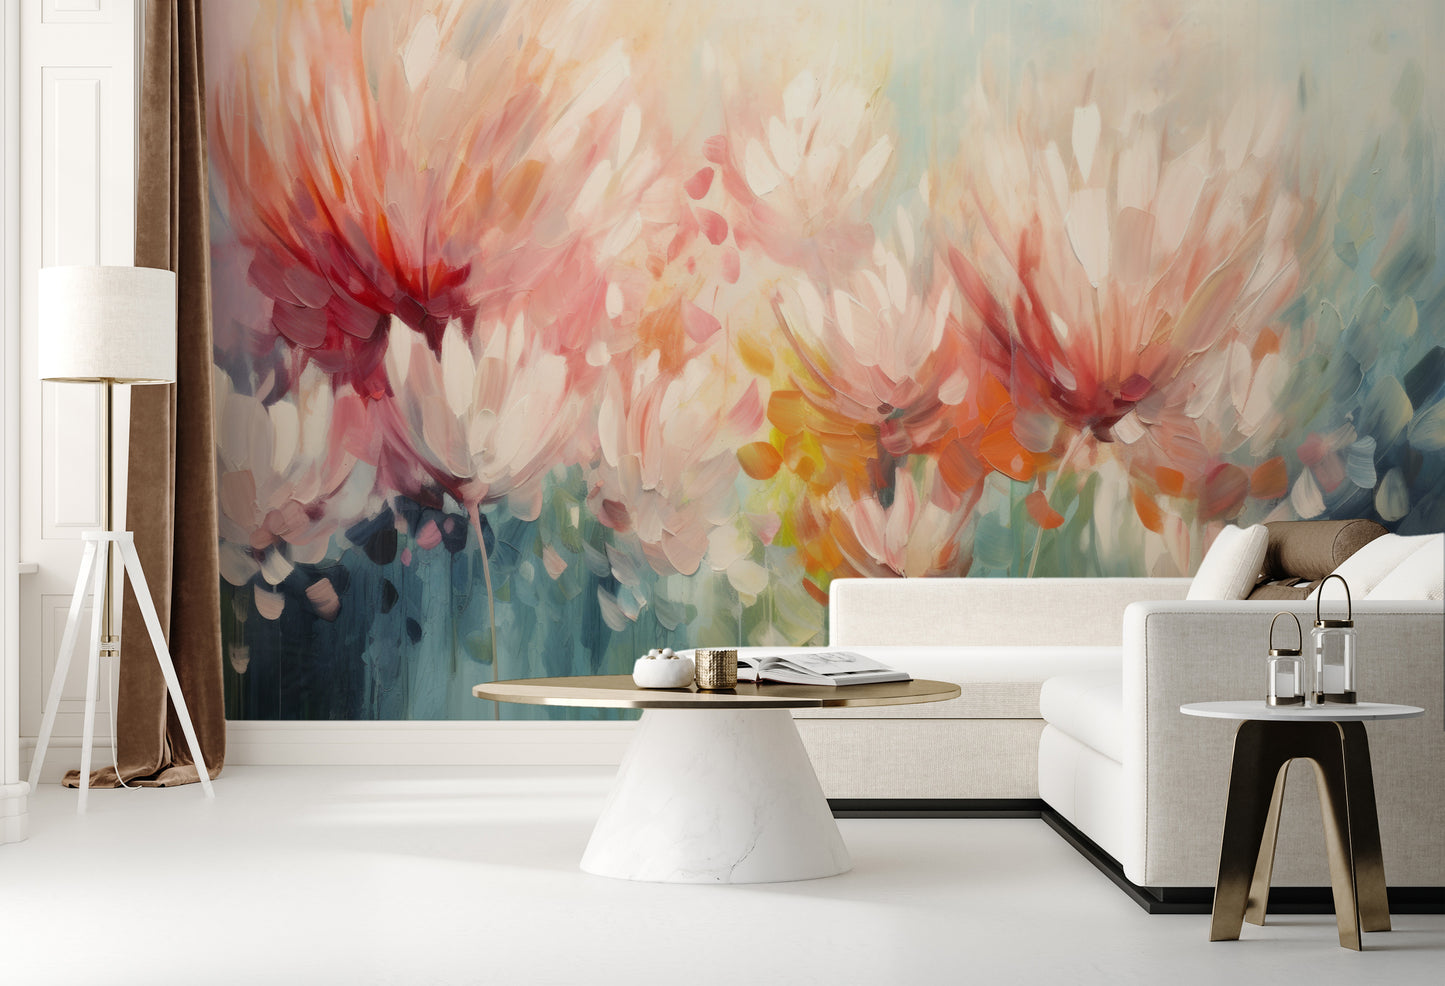 Wzór fototapety artystycznej o nazwie Floral Burst pokazanej w aranżacji wnętrza.